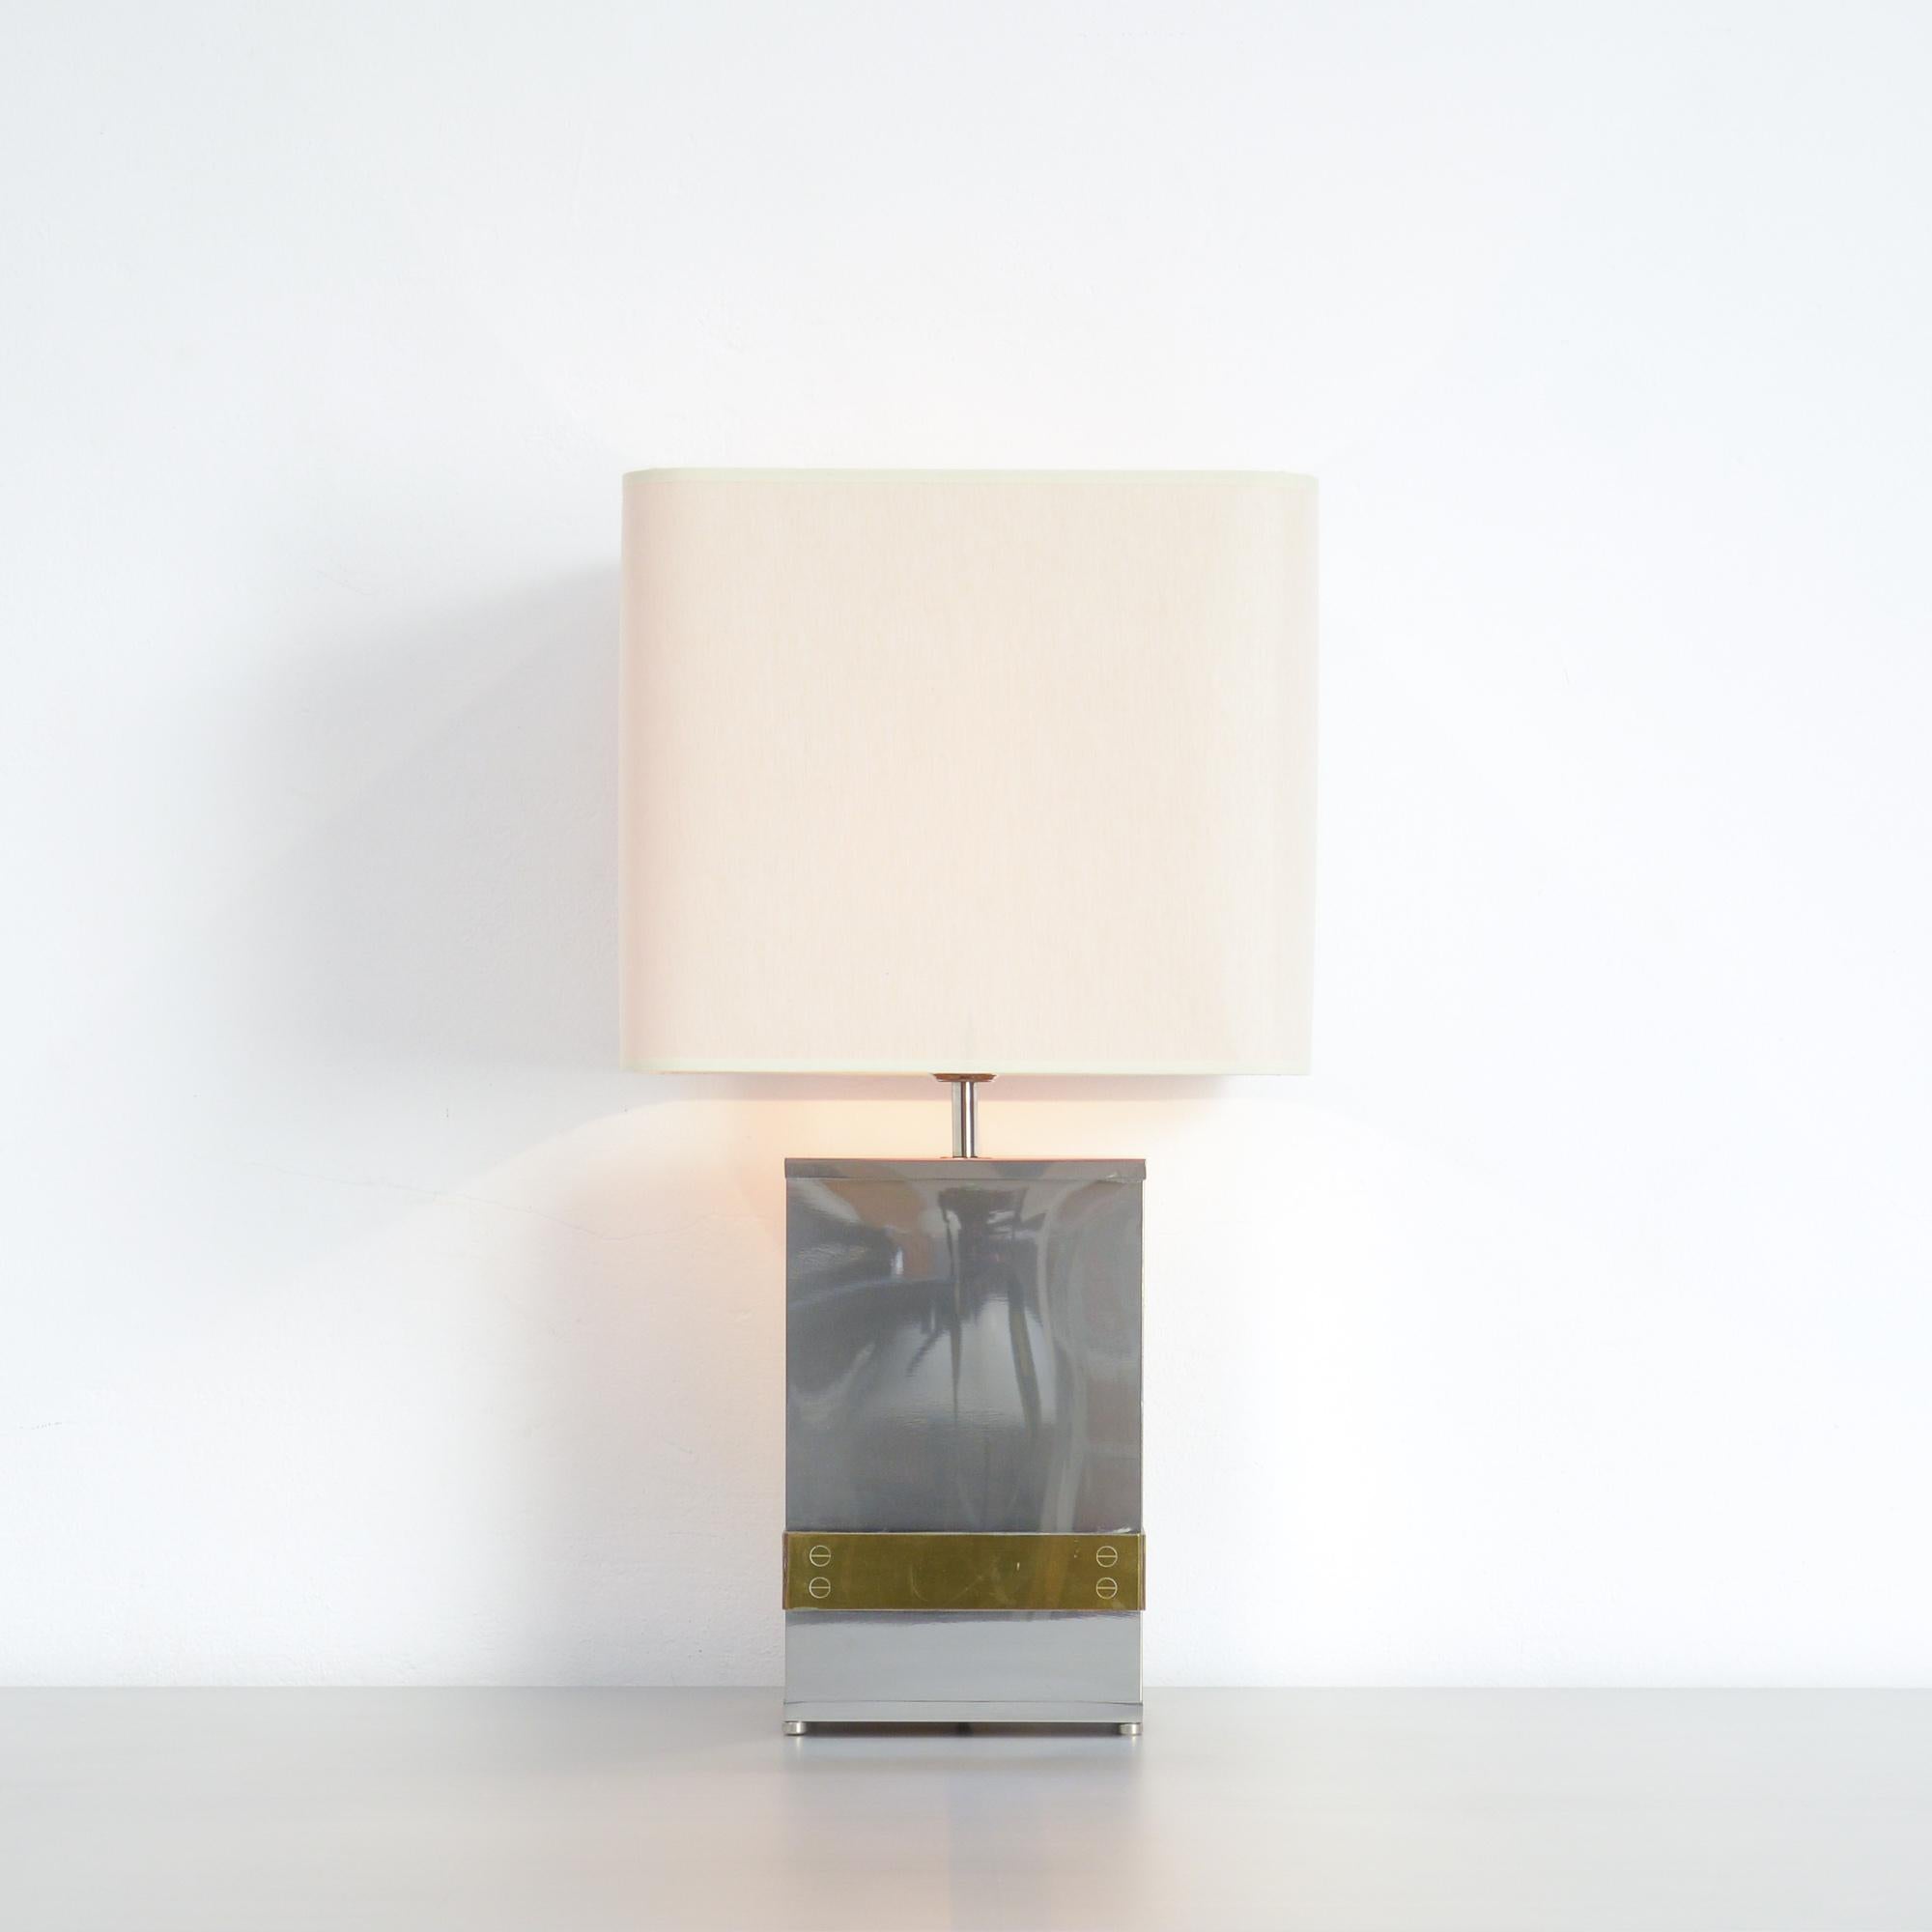 Cette lampe de table élégante a été conçue par Tommaso Barbi en Italie dans les années 1970.
La base est en acier inoxydable poli avec des détails en laiton.
La lampe est en très bon état avec un nouvel abat-jour. La lampe est marquée.

 